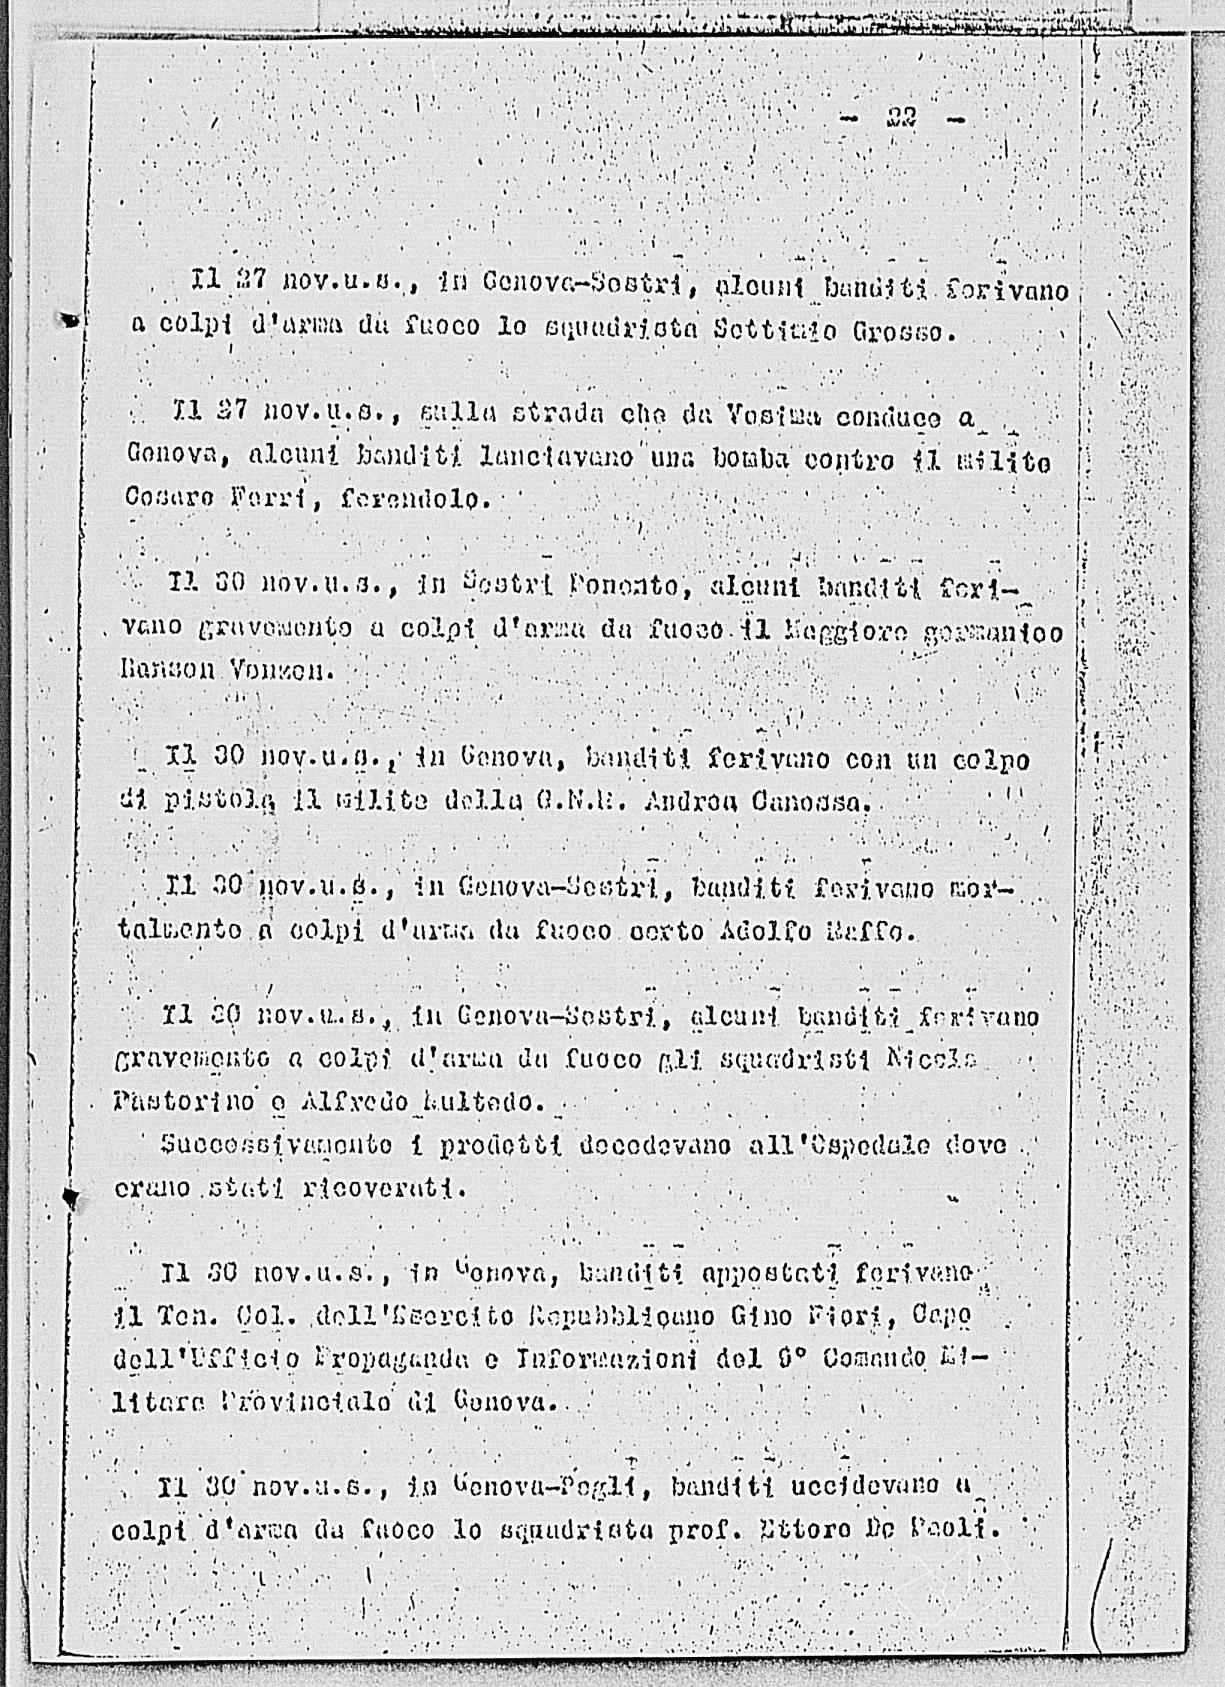 Notizia tratta dal Notiziario della Guardia Nazionale Repubblicana del giorno 10-12-1944